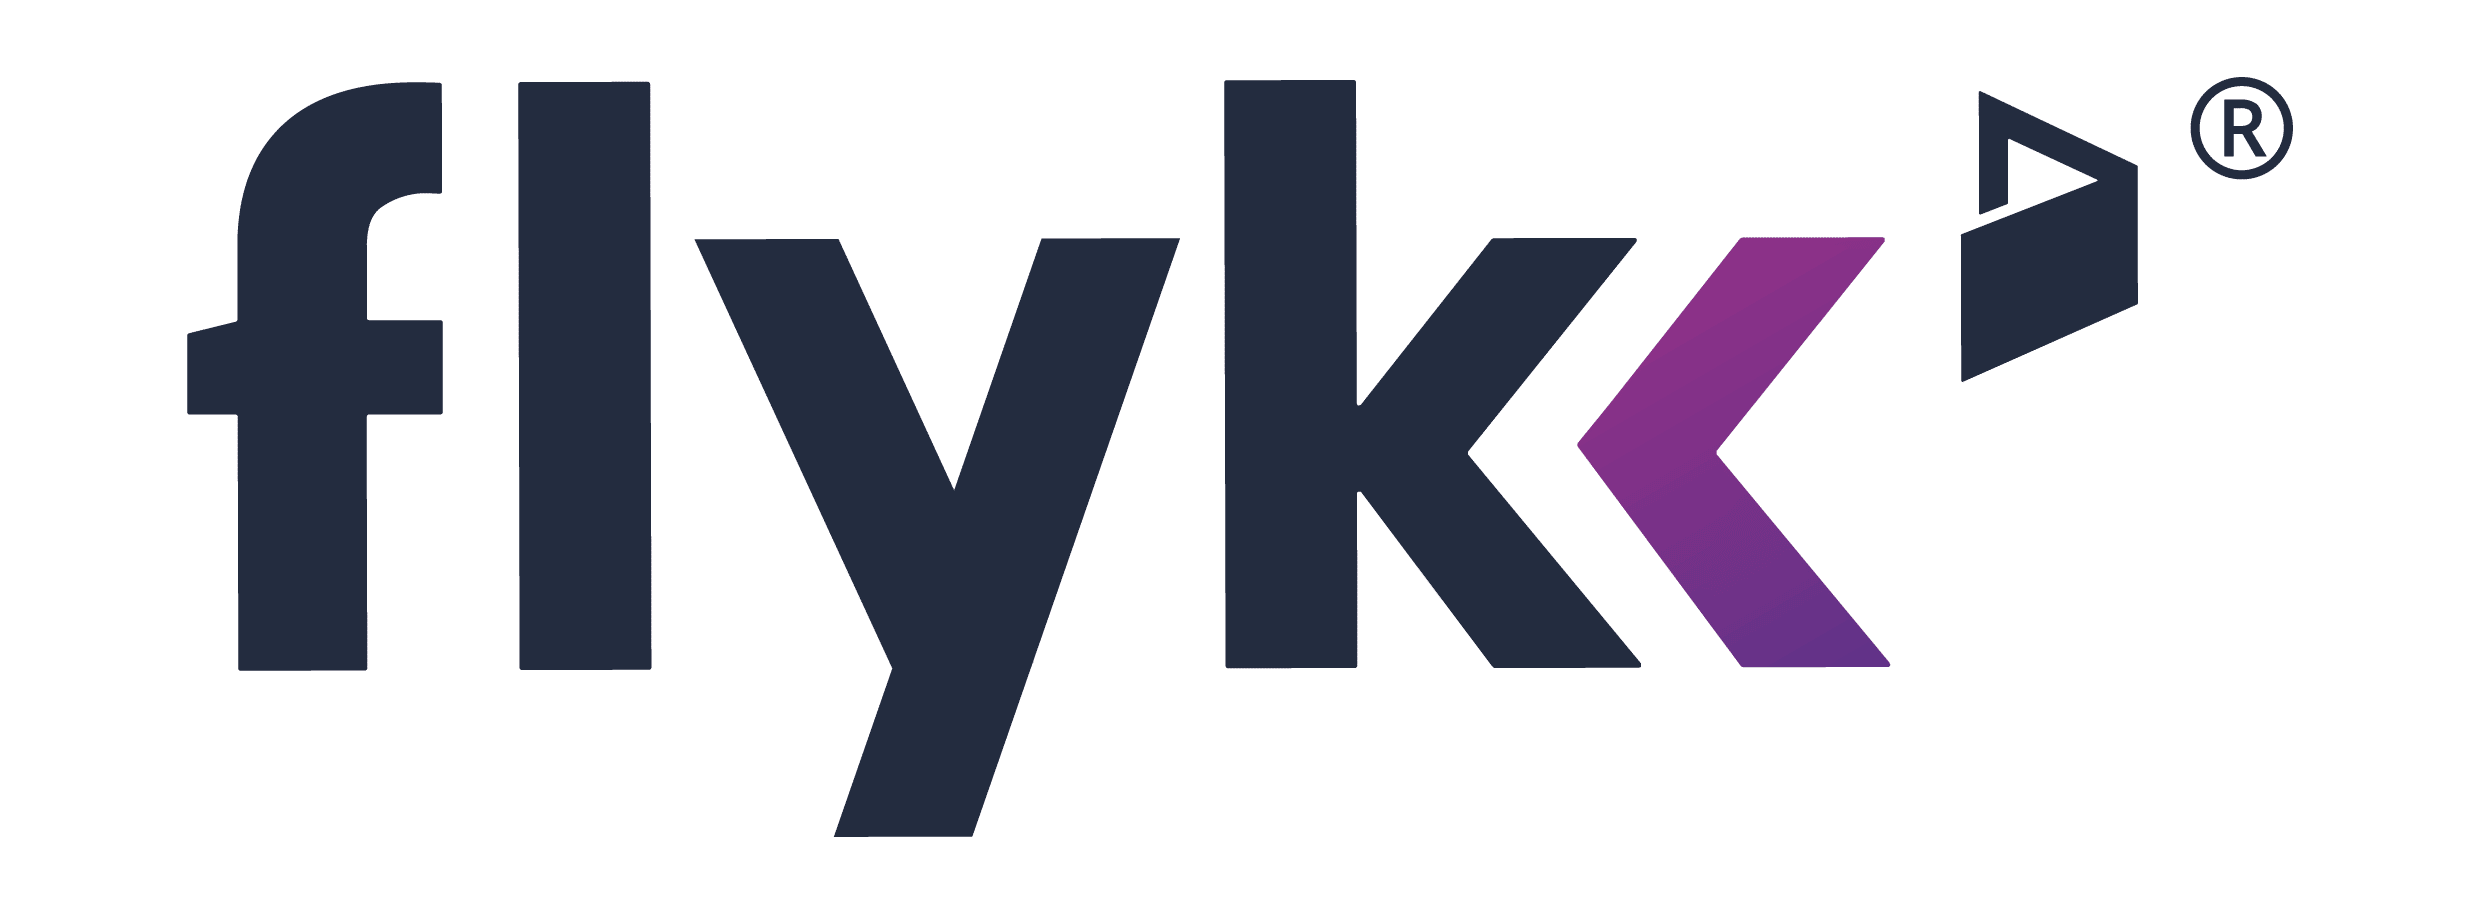 flykk-logo